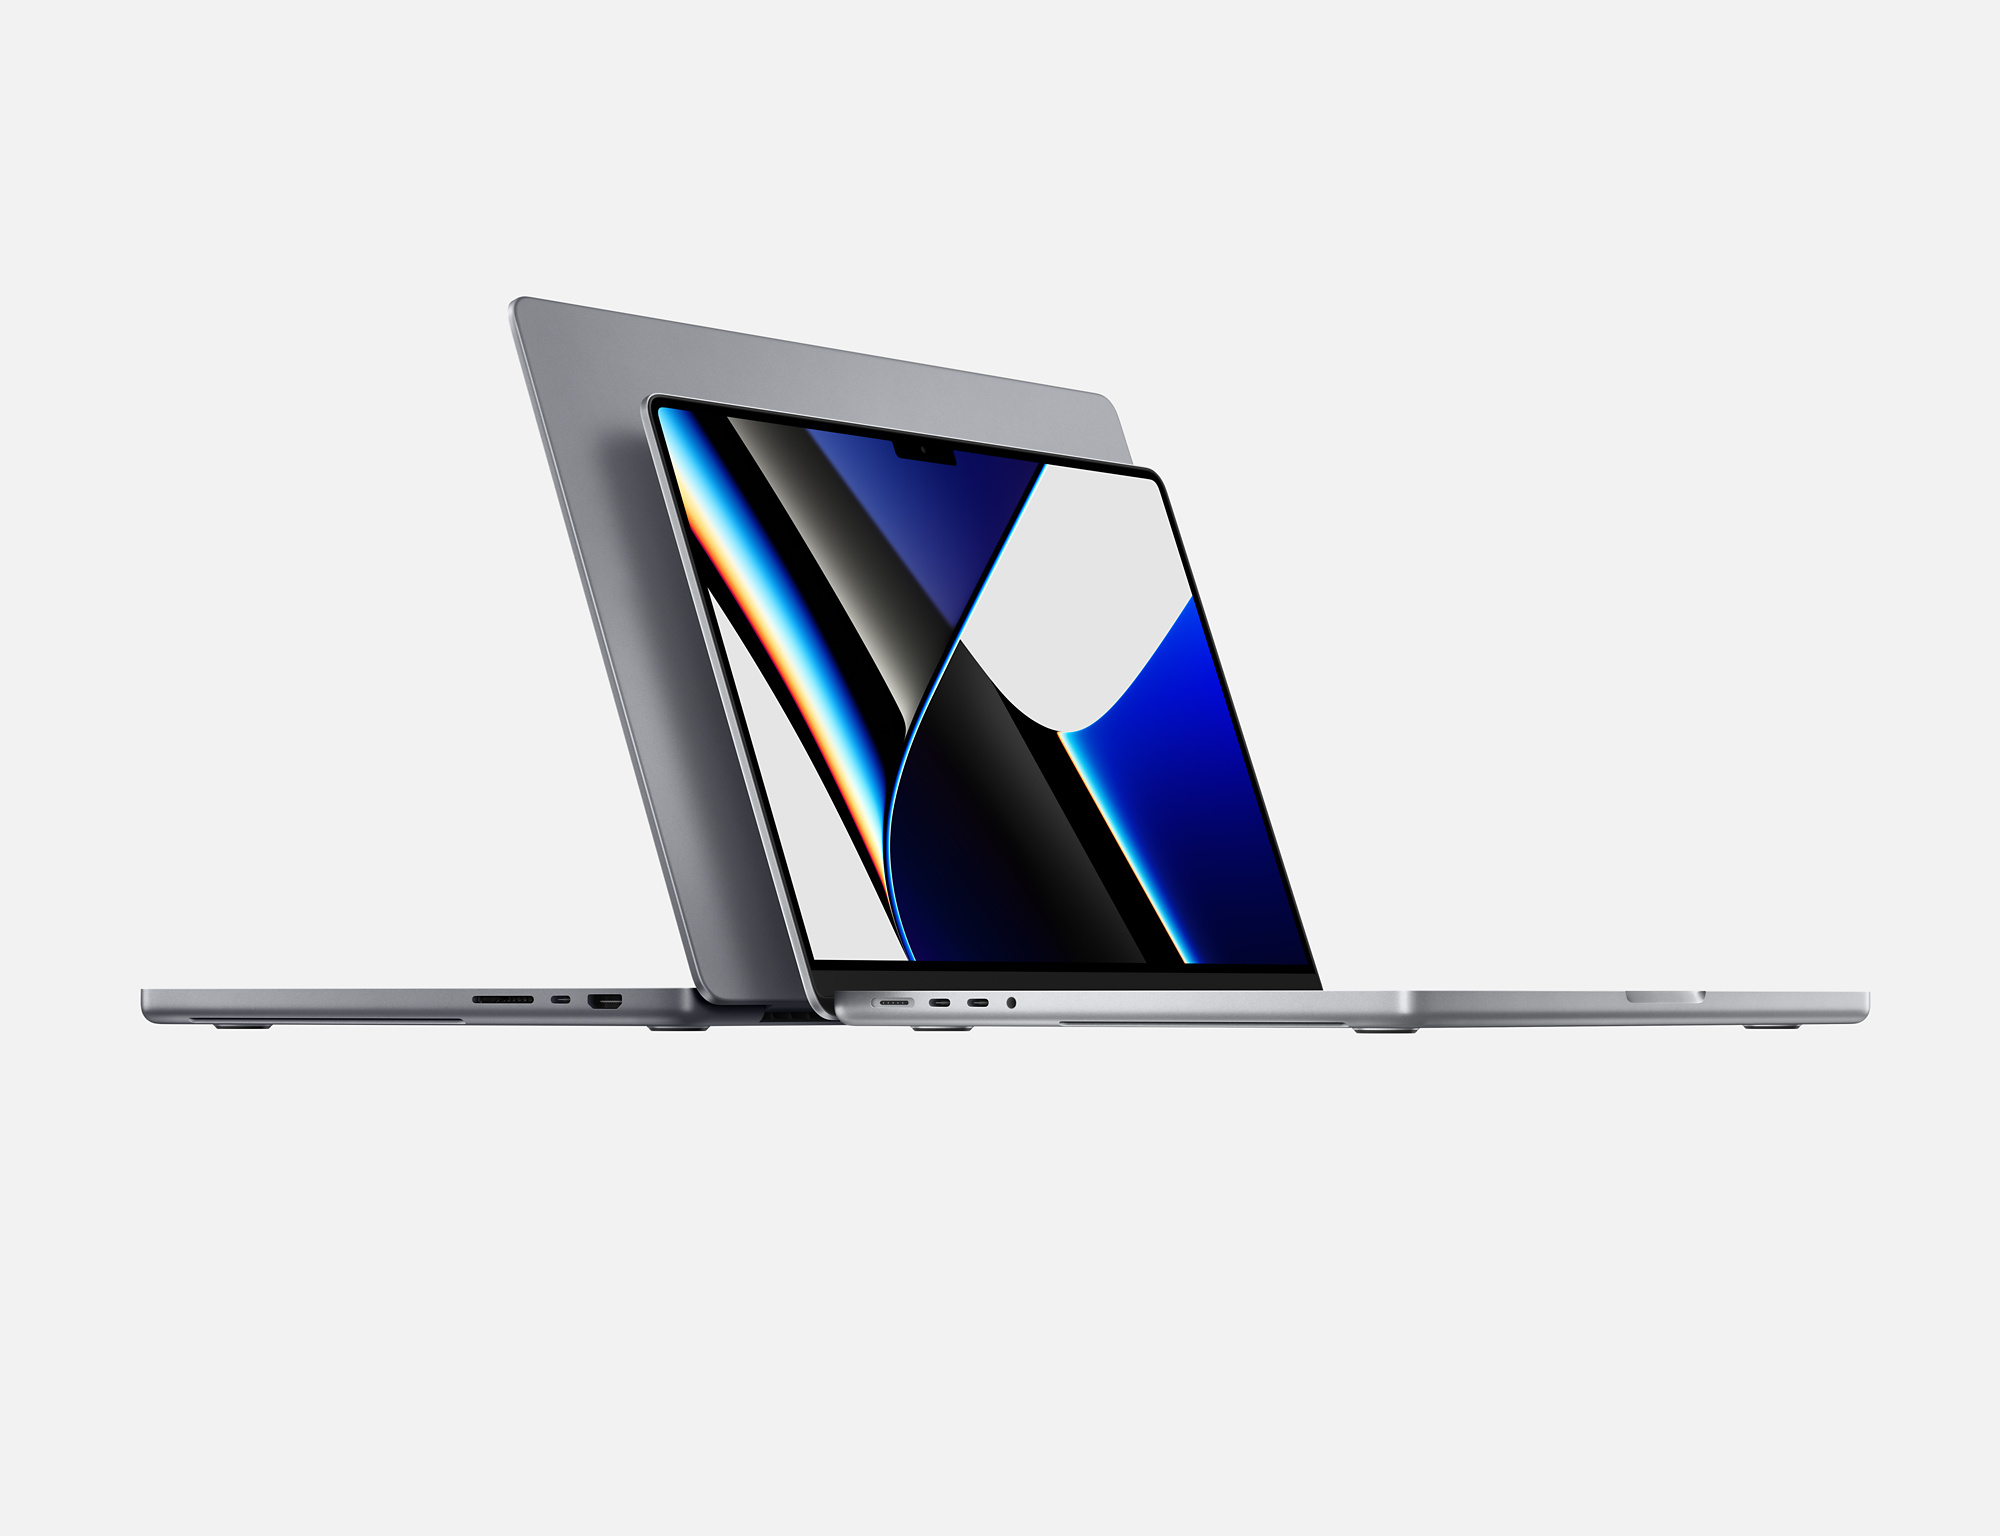 خريد و قيمت لپ تاپ اپل Apple MacBook Pro - مقداد آي تي